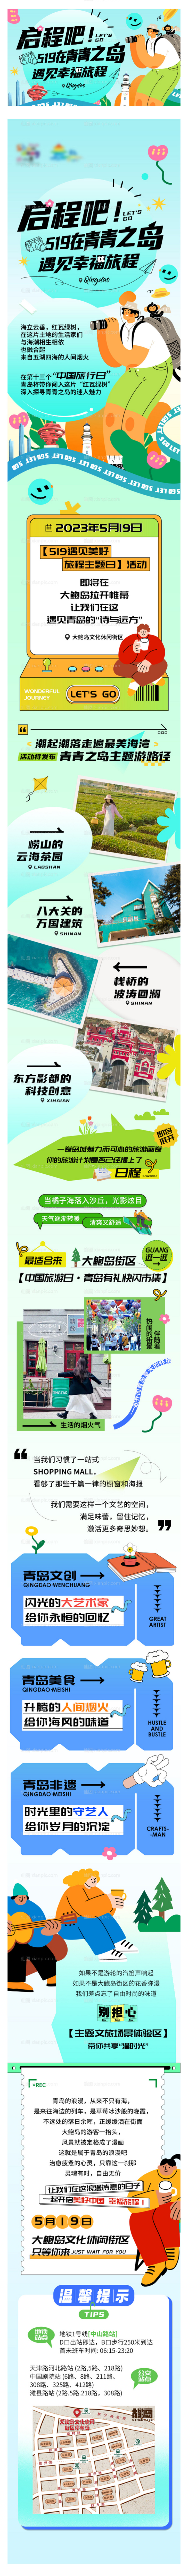 素材乐-商业旅游日活动预告海报长图